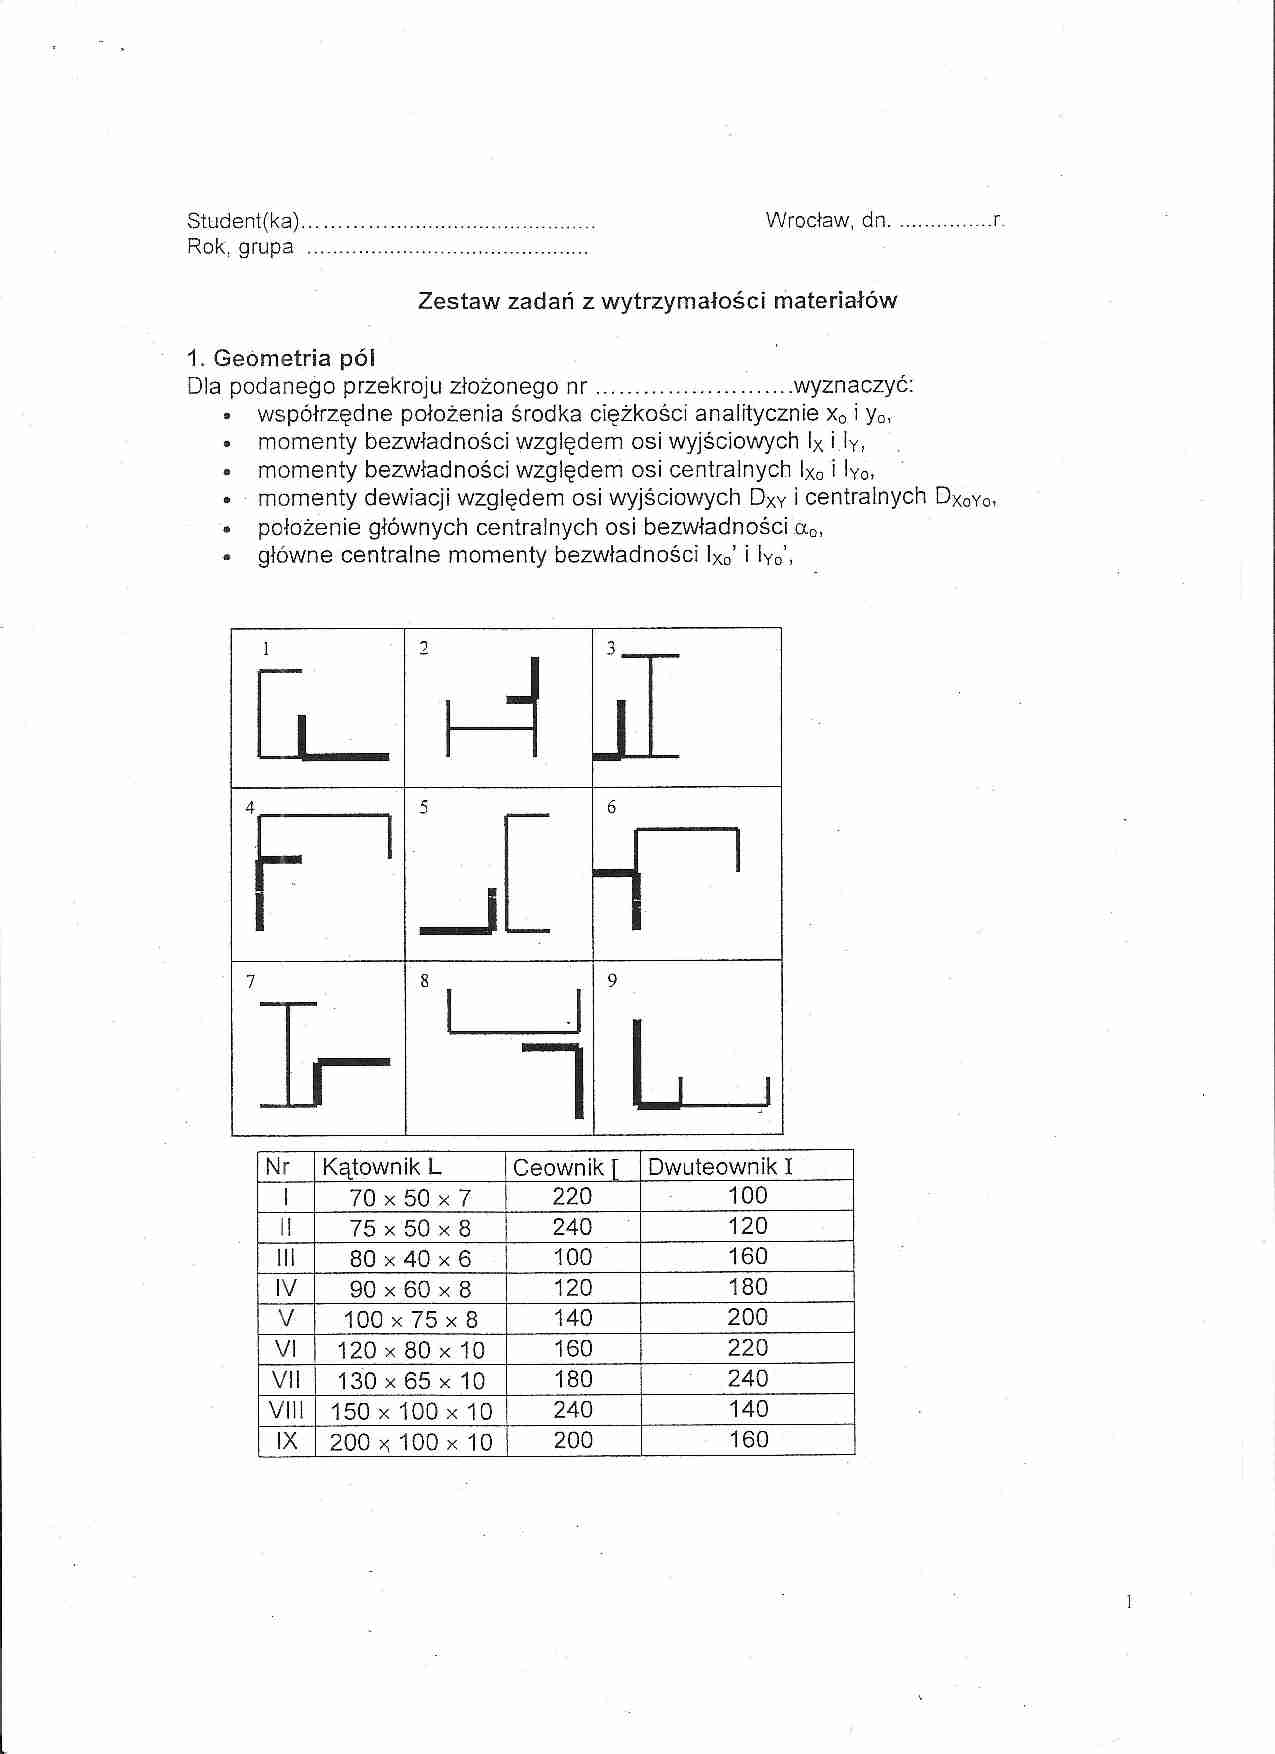 Zestaw zadań z wytrzymałości materiałów - geometria pól - strona 1